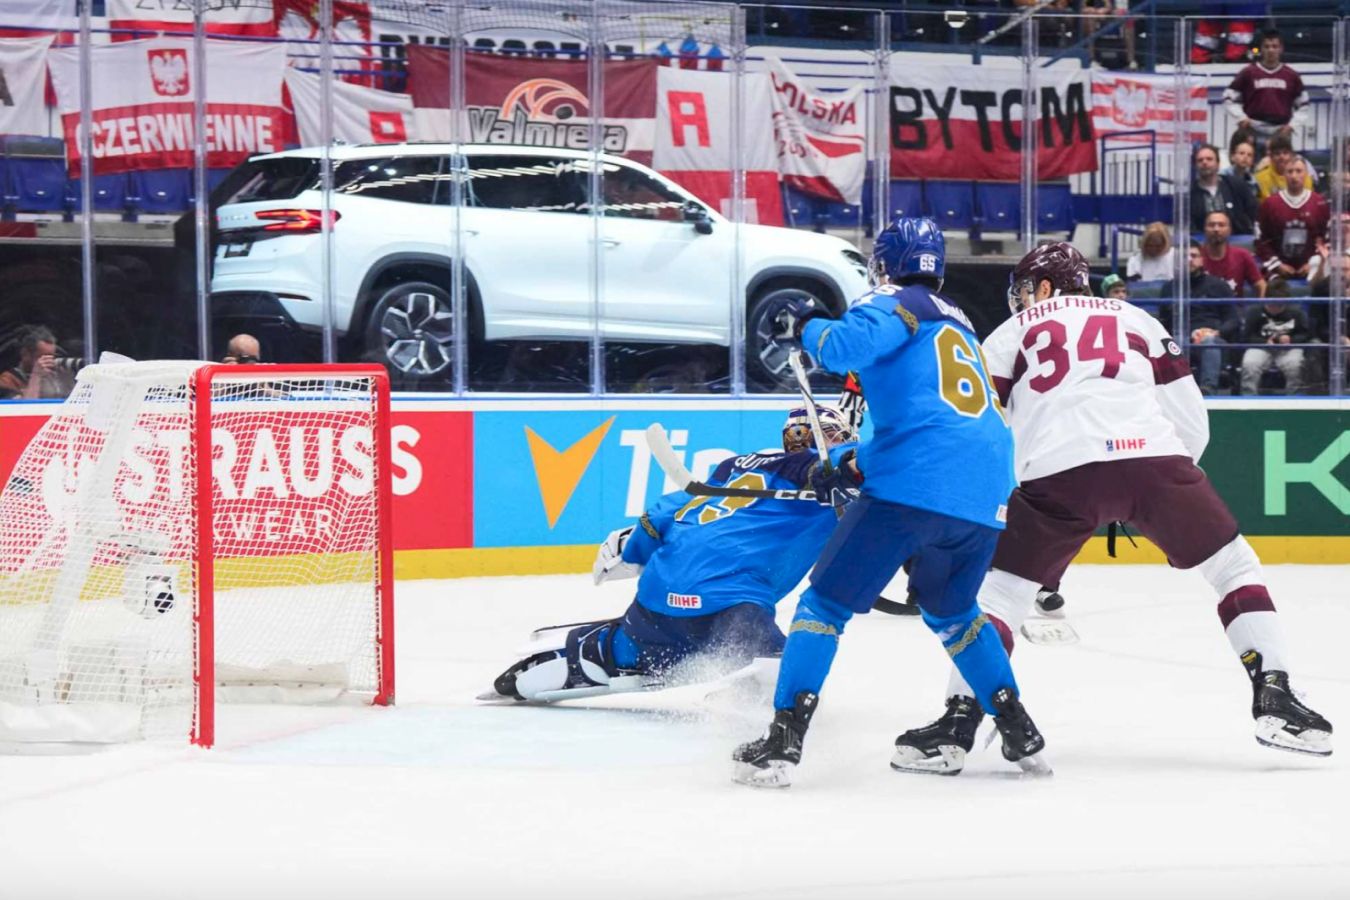 Организаторы чемпионата мира по хоккею убрали флаг Украины на матче Латвия - Казахстан